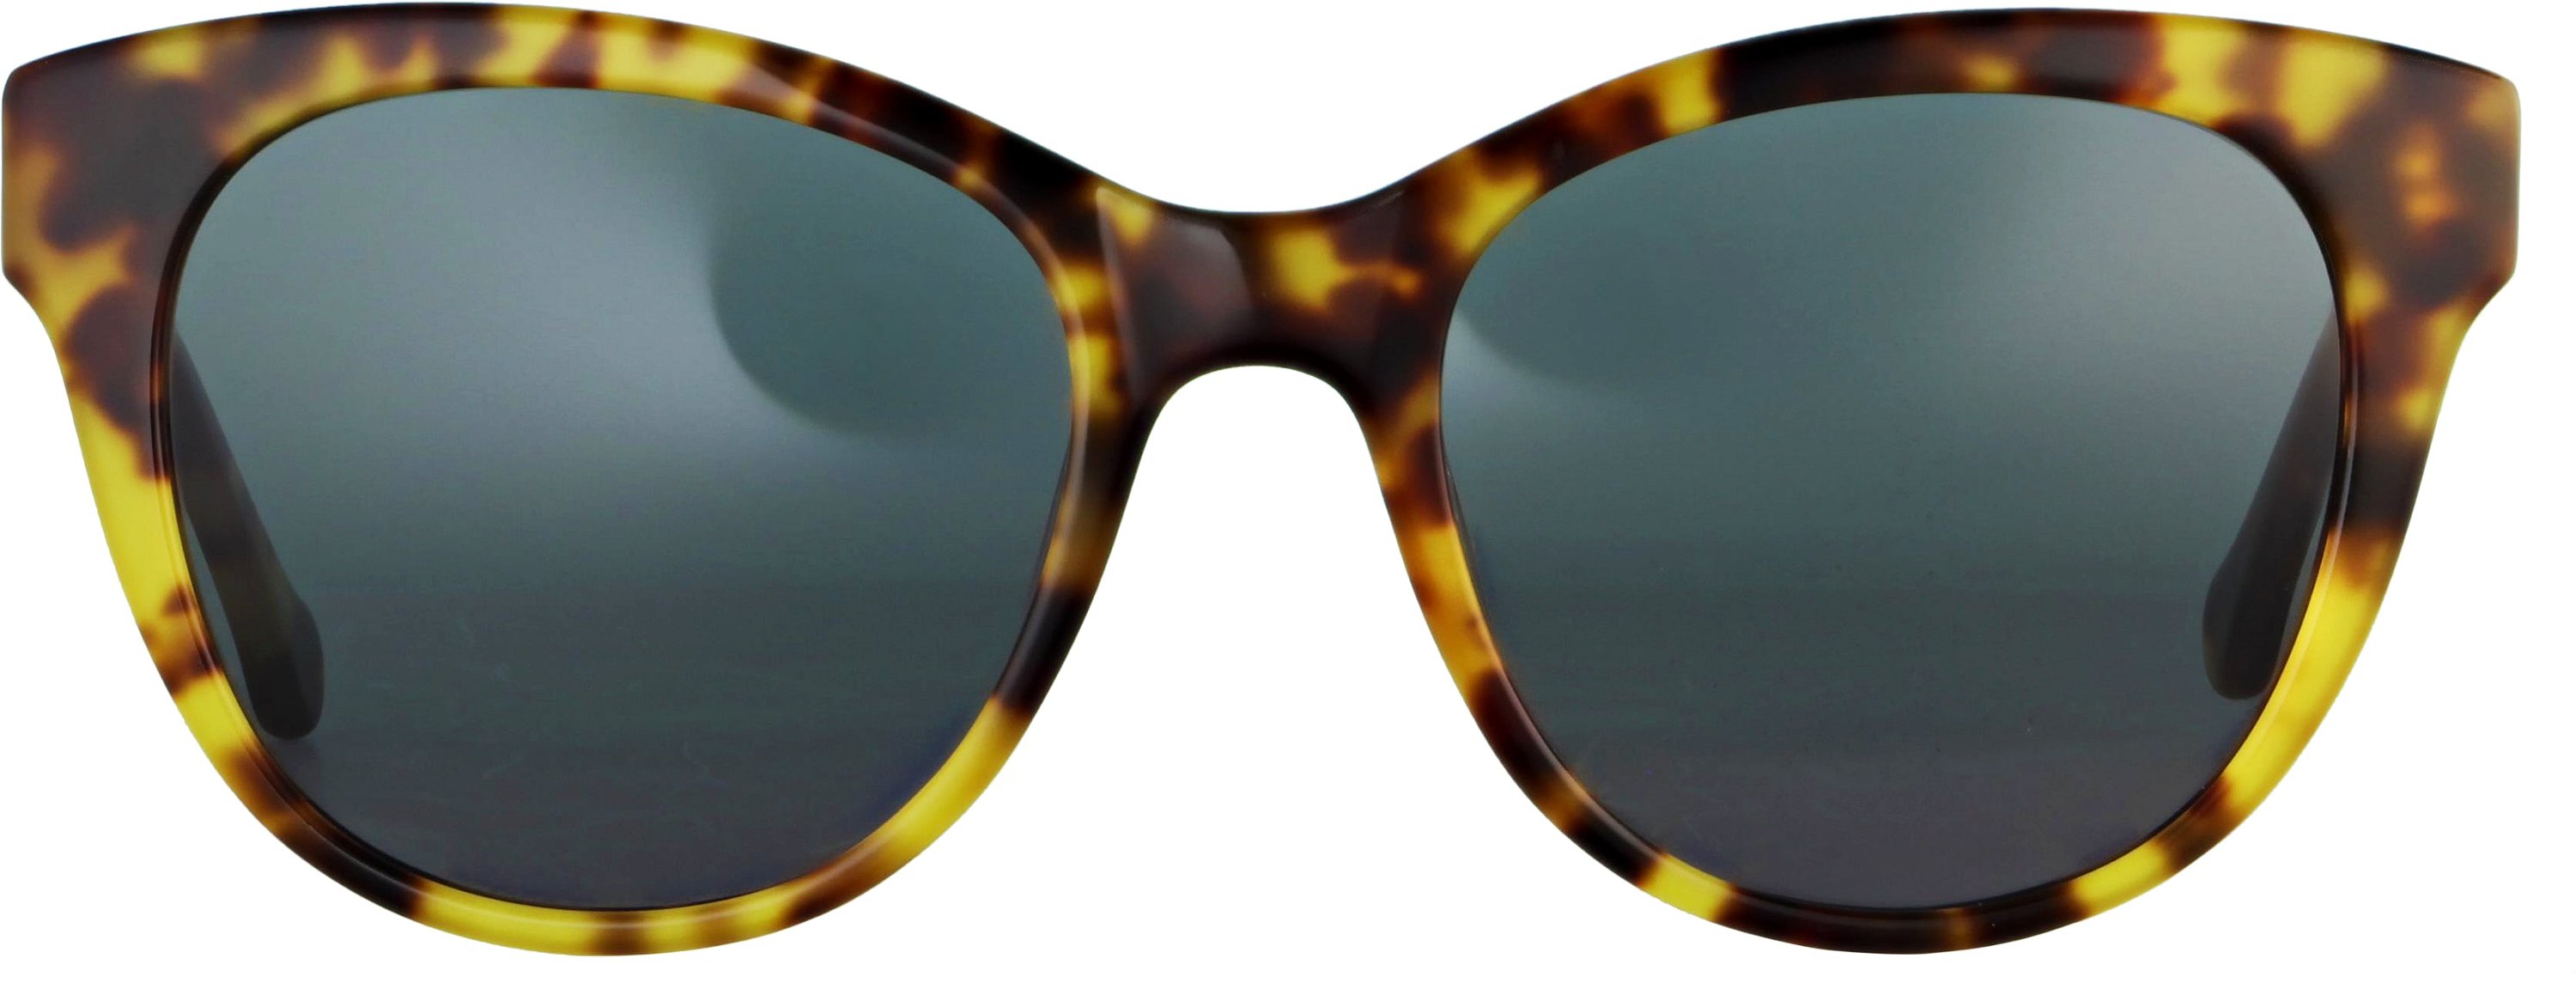 Das Bild zeigt die Sonnenbrille 141602 von der Marke Abele Optik in havanna.